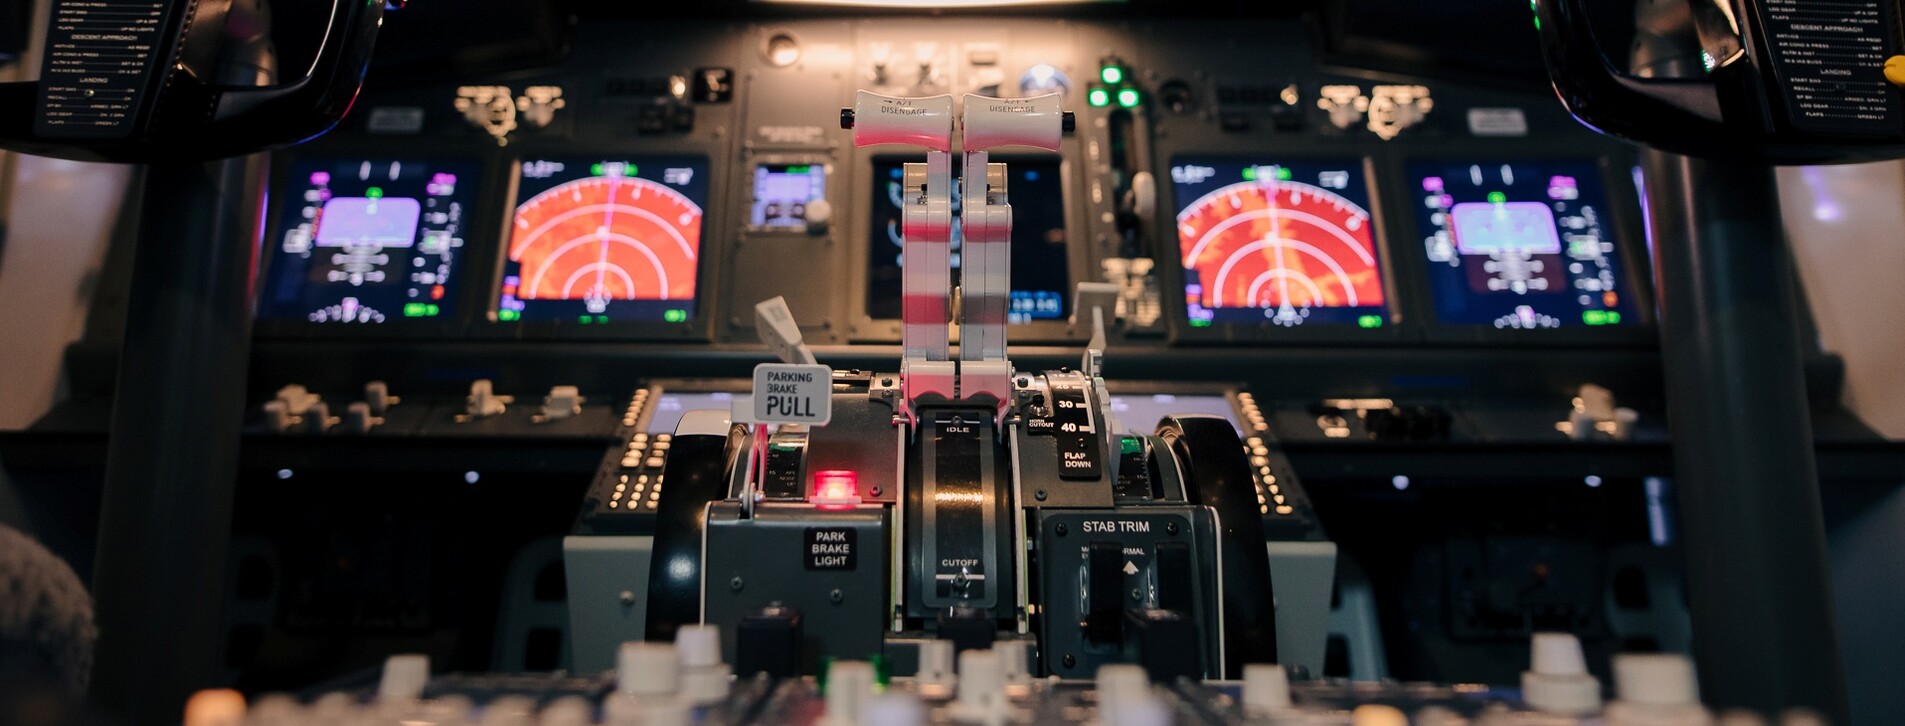 Фото 1 - Авиасимулятор Boeing-737